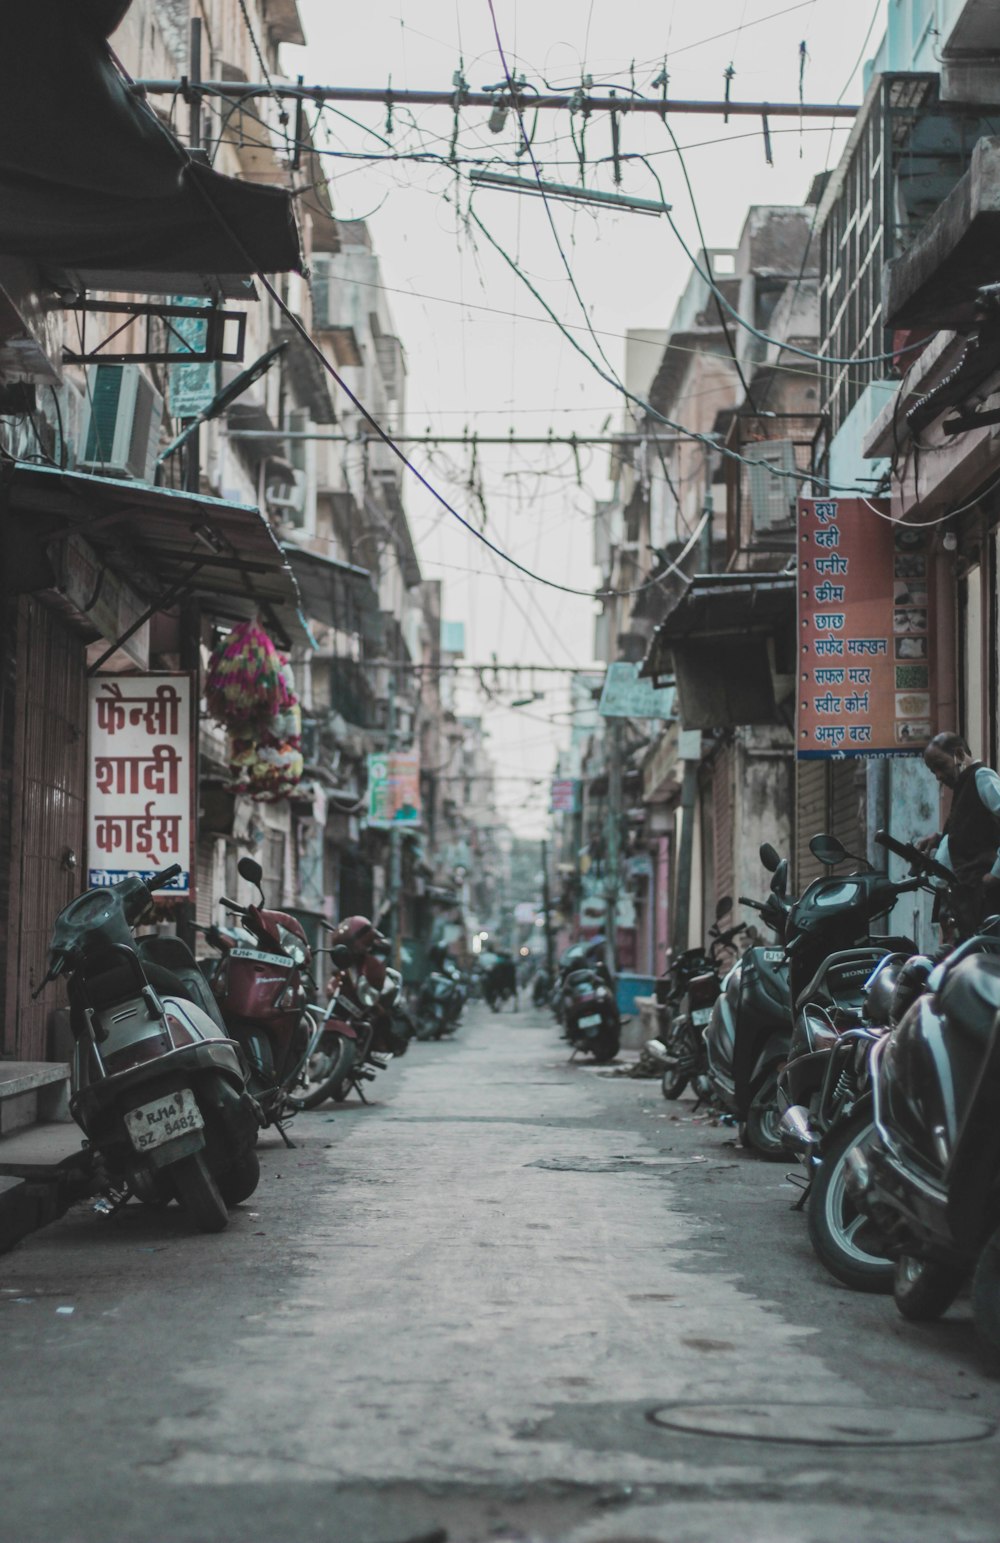 motocyclettes stationnées dans la rue pendant la journée